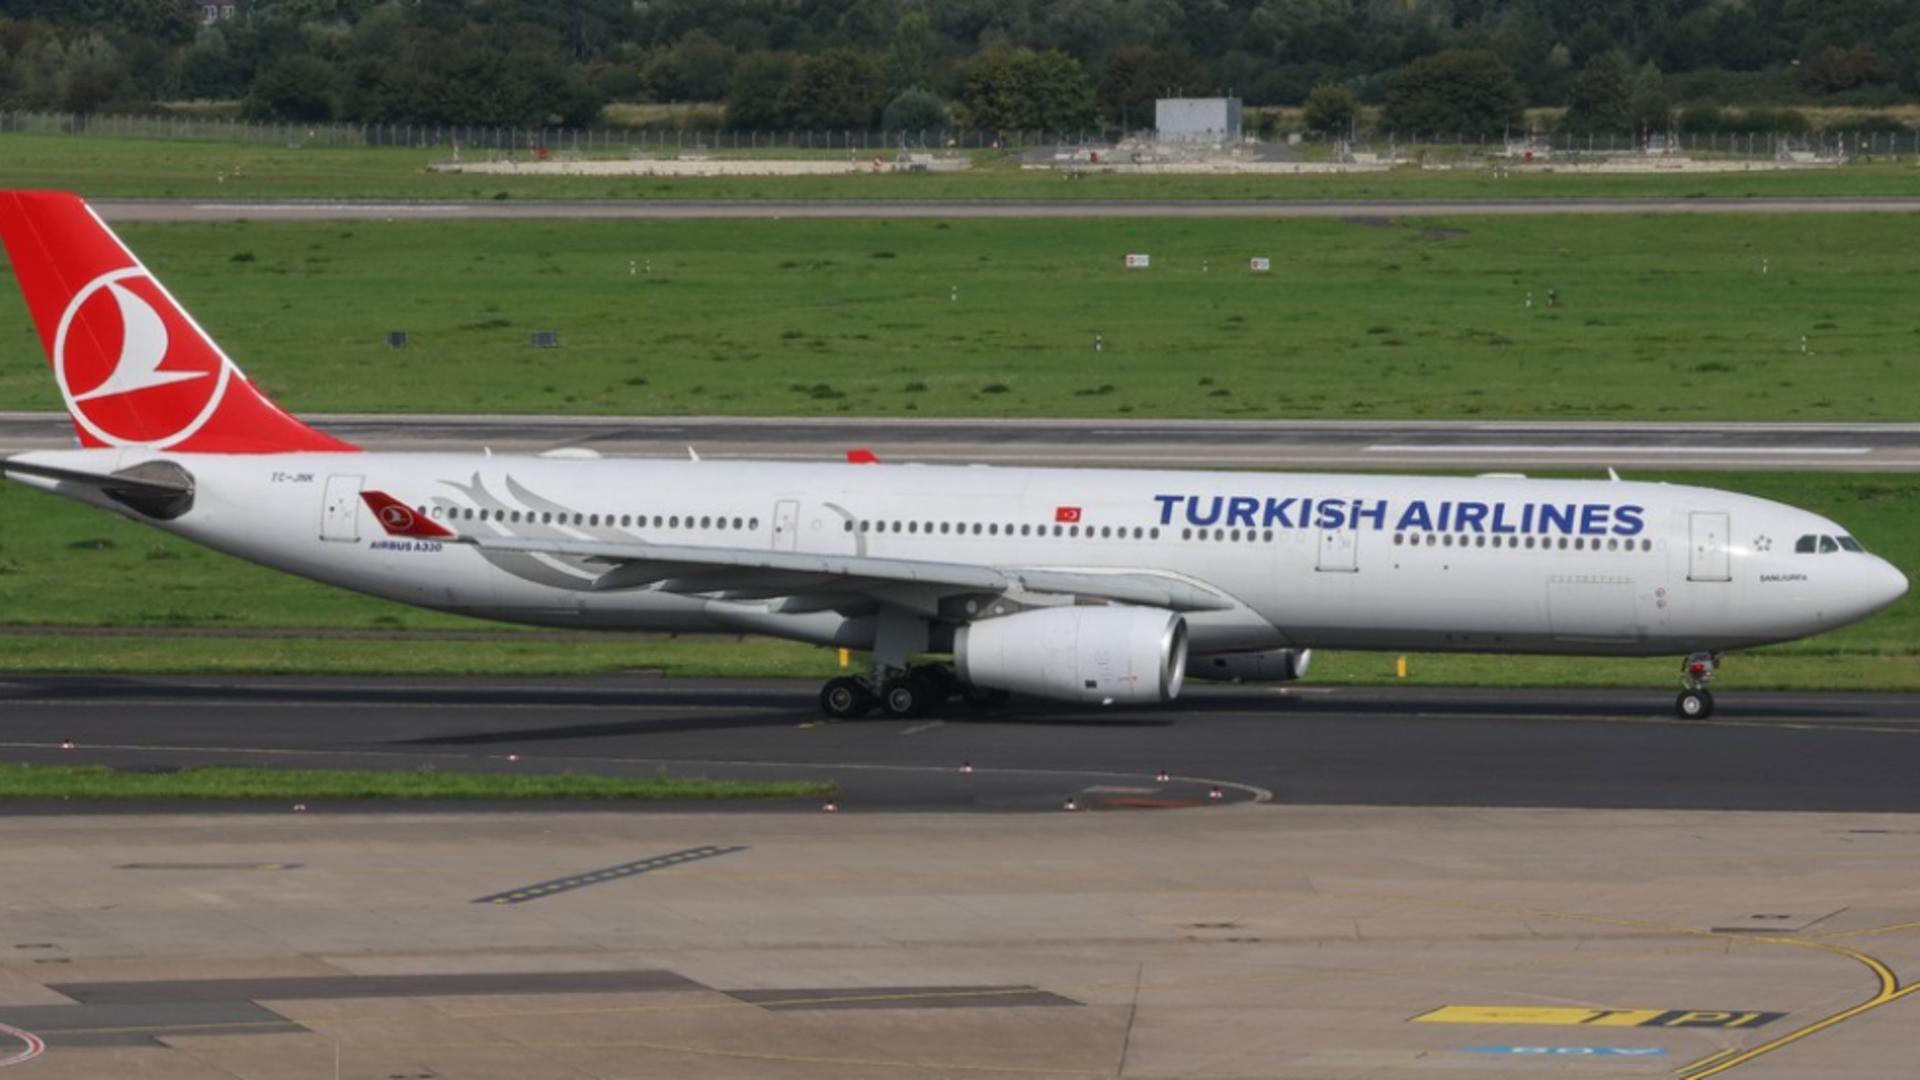 Toate zborurile Turkish Airlines au fost anulate în această seară între orele 19.00 si 22.00. Care este motivul pentru acest blocaj